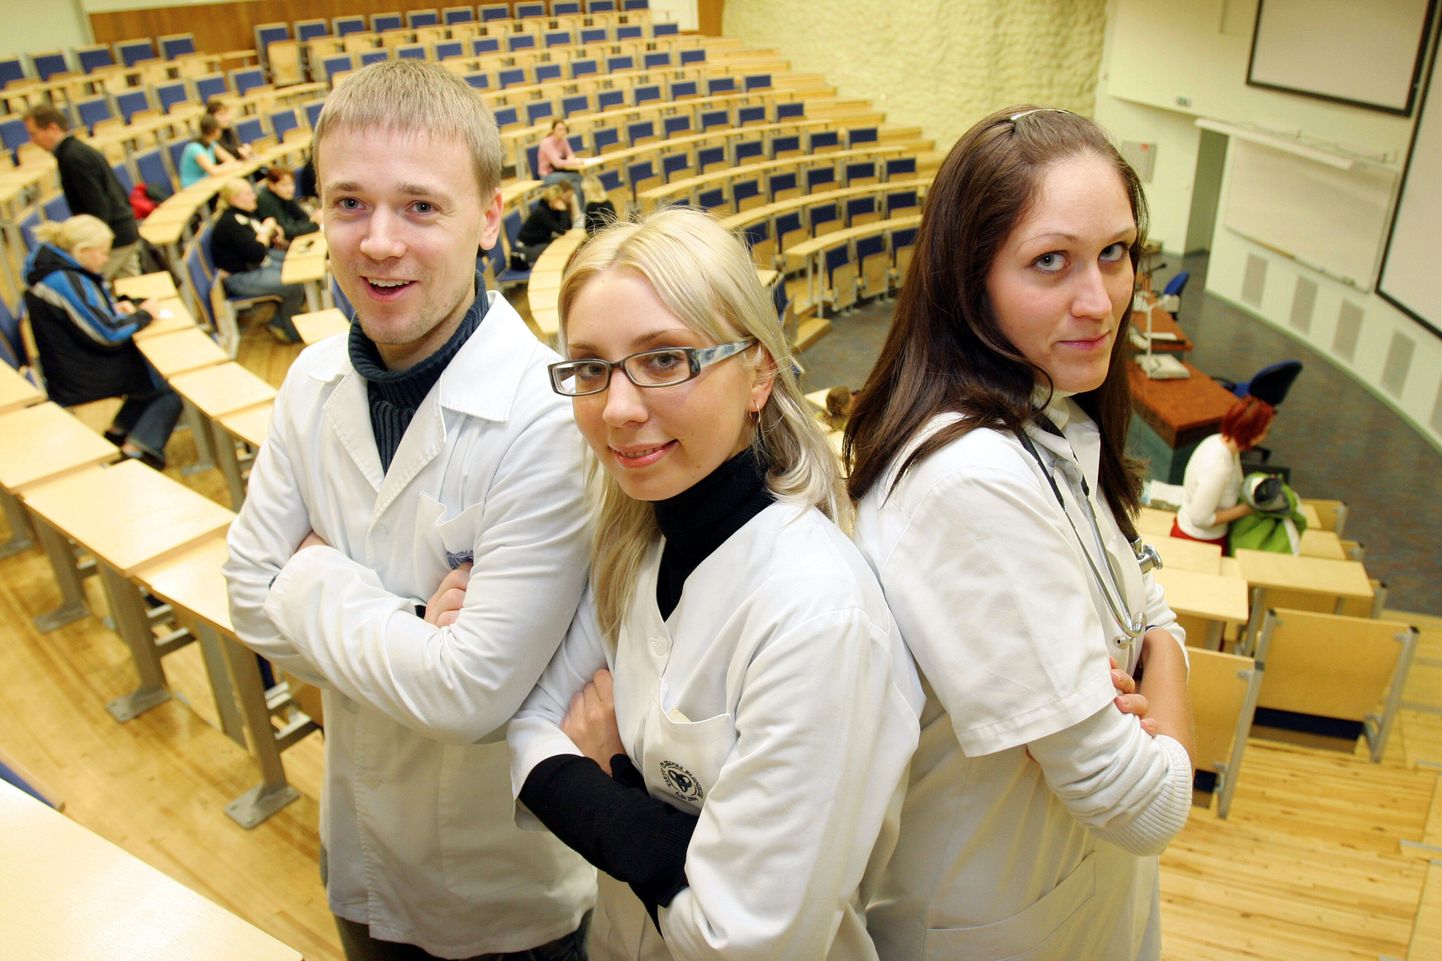 Eesti Arstiteadusüliõpilaste Seltsi endised liikmed Tanel Vahopski (vasakult), Kristel Tarlap ja Katrin Täär (EAÜS-i president).